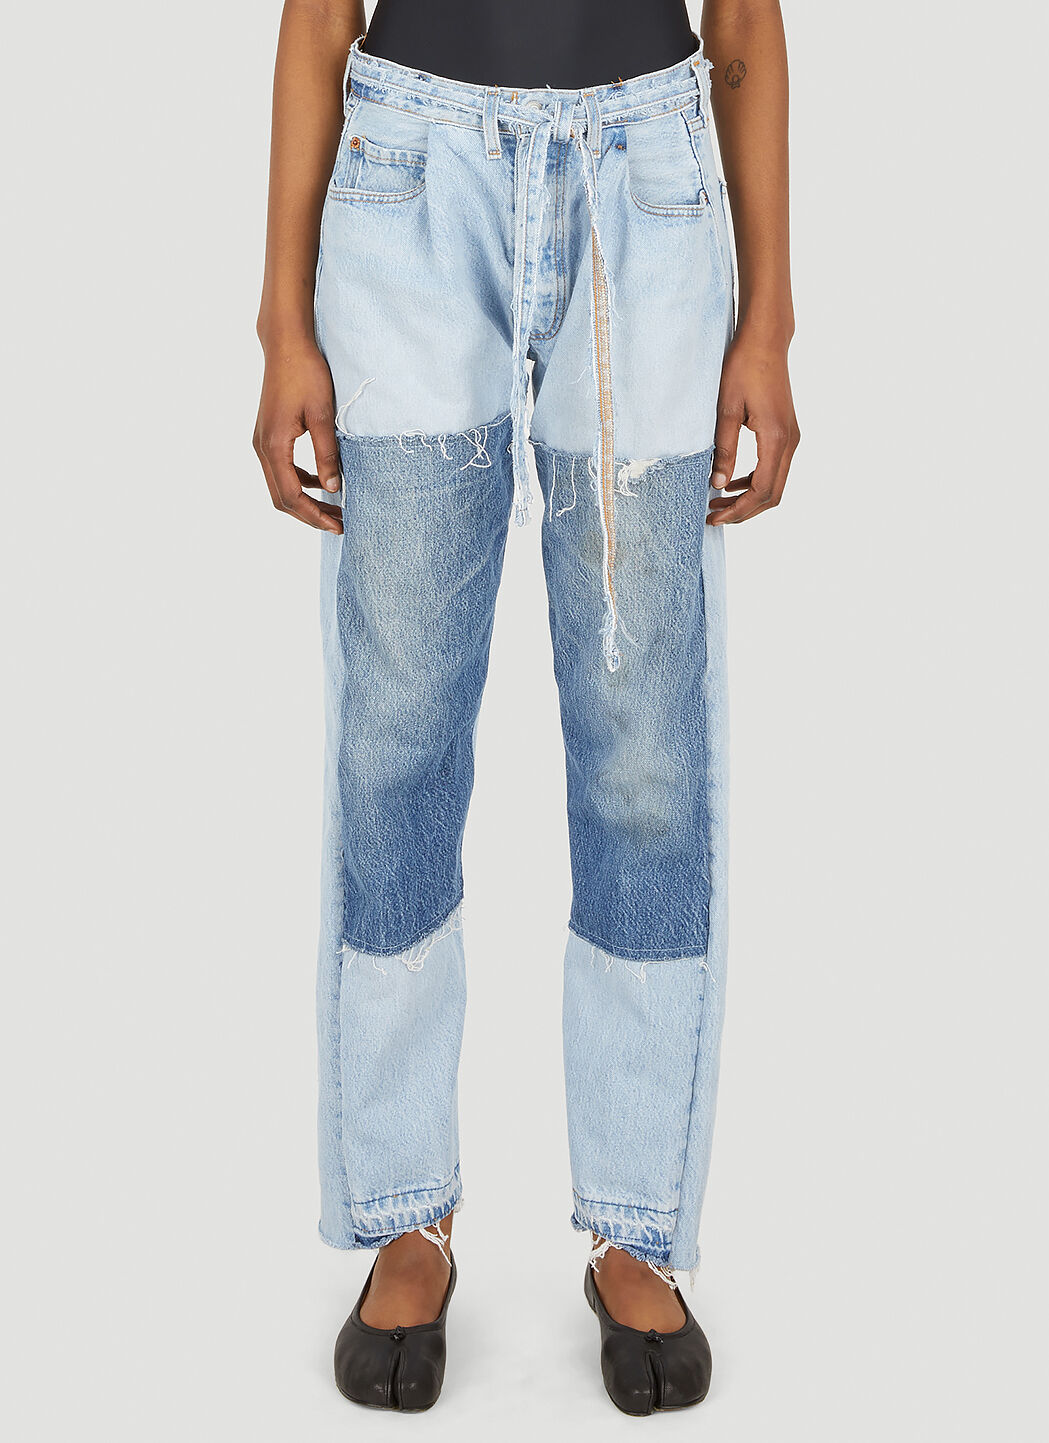 Bonum Asymmetric Cuff Jeans Blue bon0350003